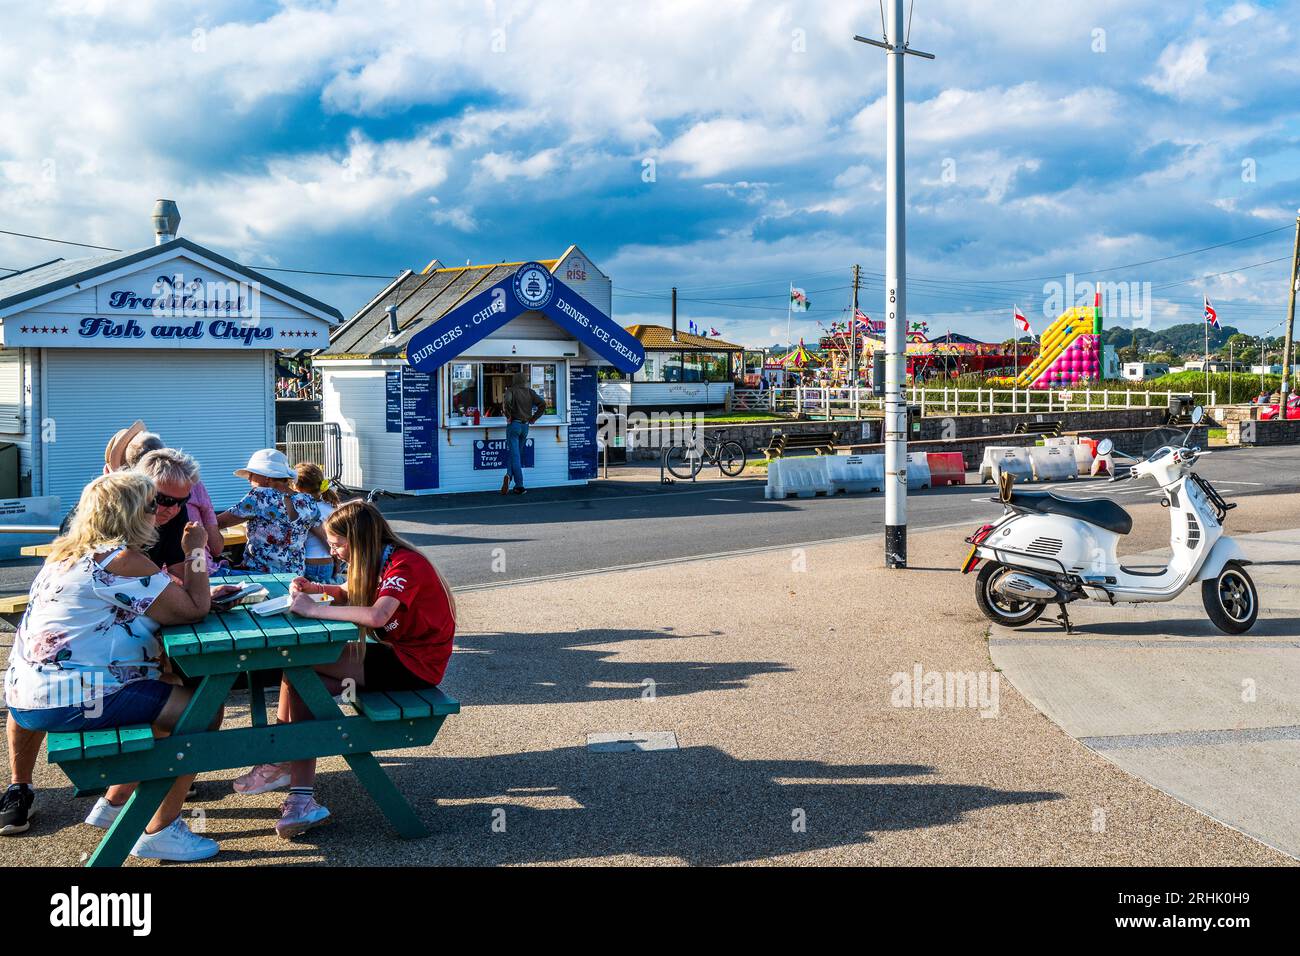 Turistas fuera de una choza de pescado y patatas fritas, West Bay, Dorset, Reino Unido. Escena costera británica clásica, scooter brillante, pescado y patatas fritas, nubes y feria de atracciones Foto de stock